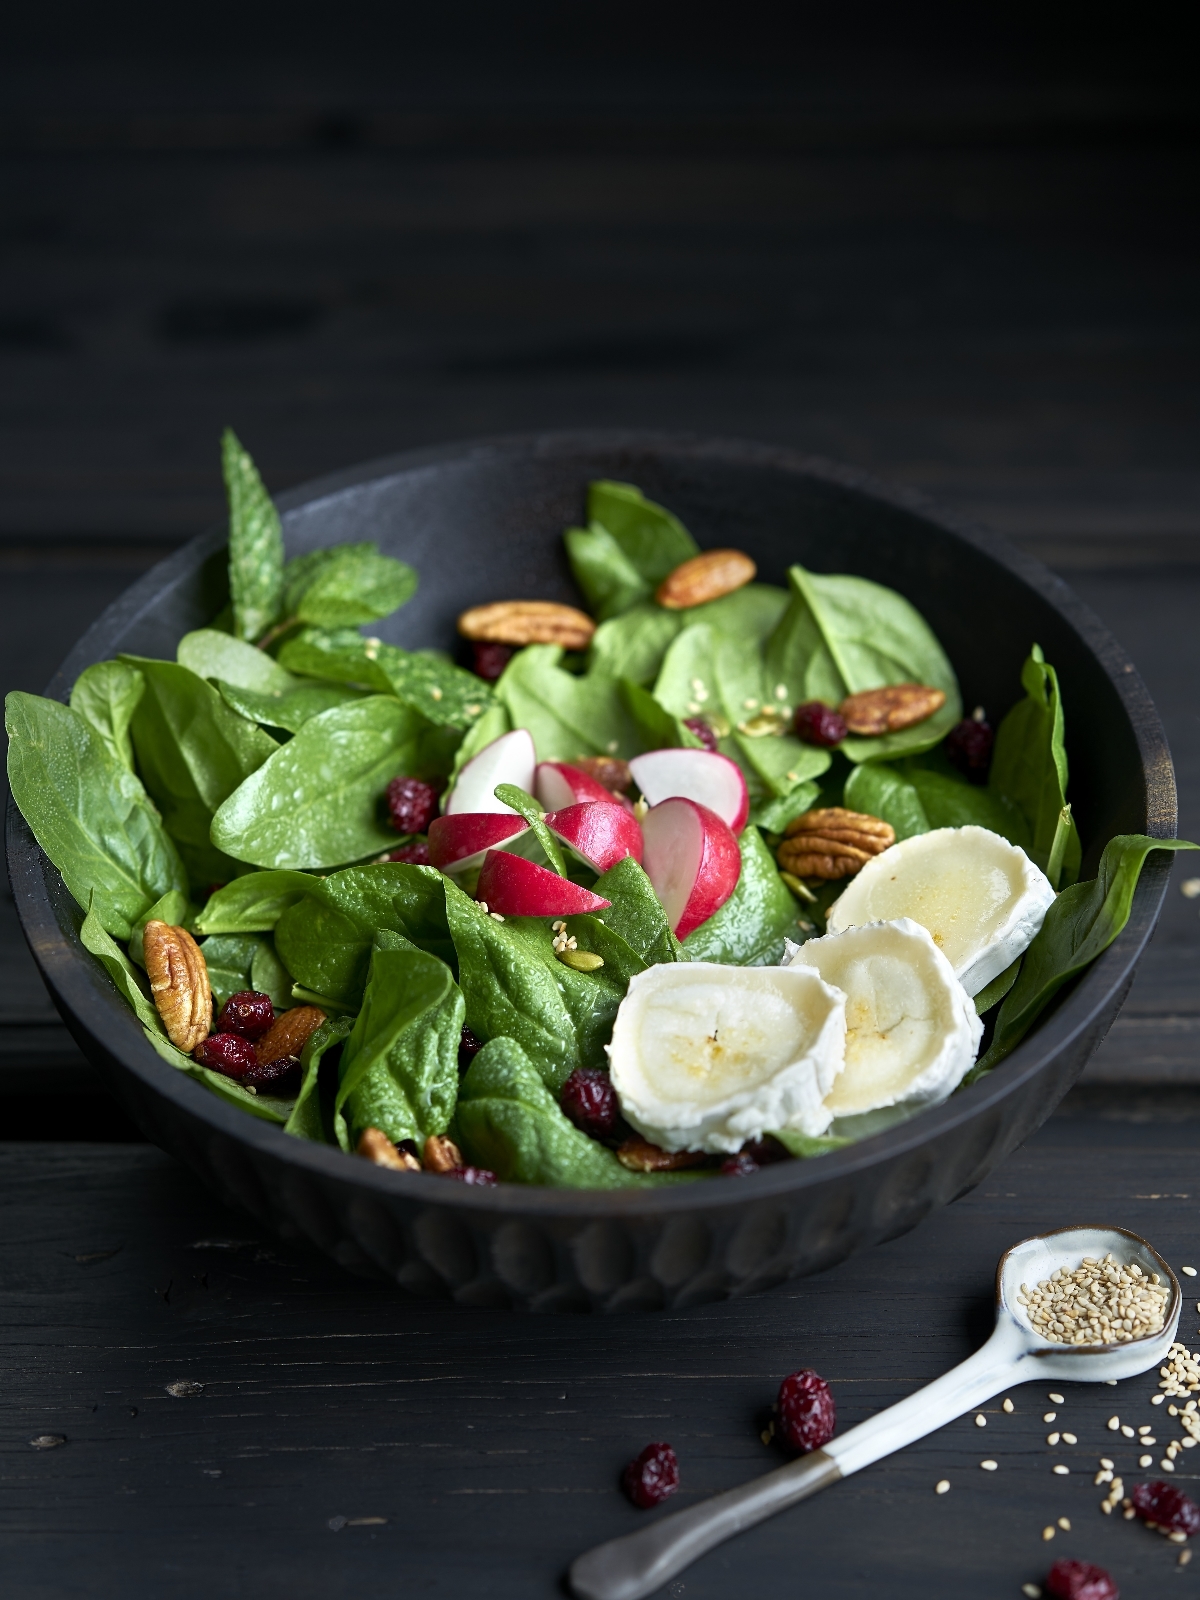 A la hora de elegir ensalada, los nutricionistas recomiendan sustituir la lechuga por otras hojas verdes como las espinacas o los canónigos a la hora de cenar.